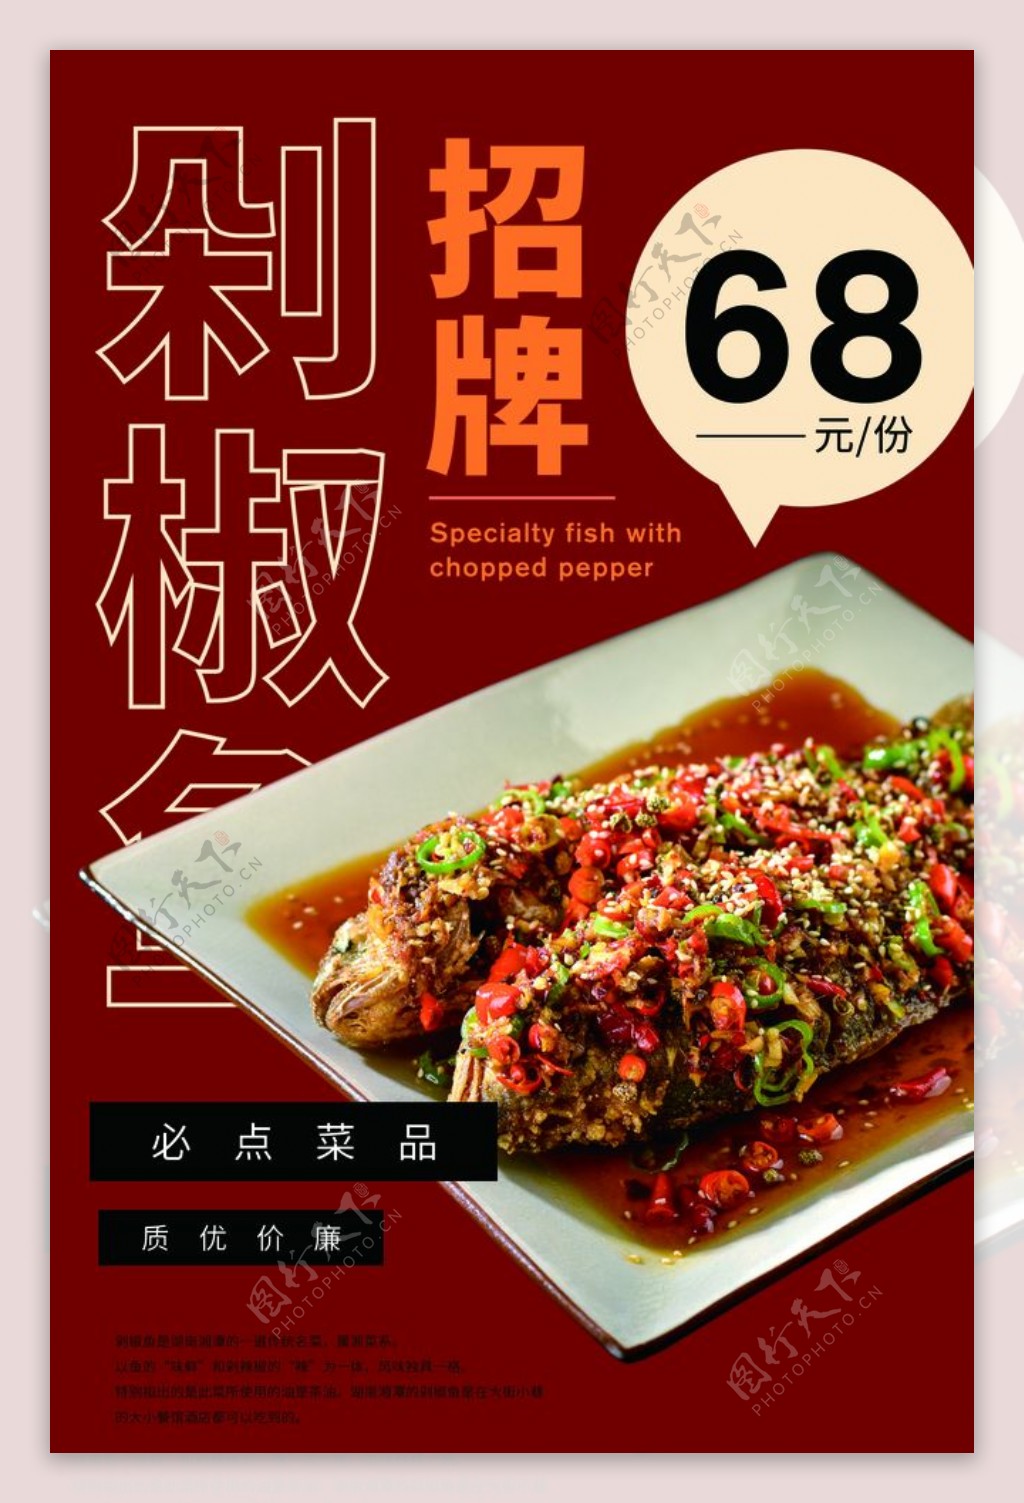 招牌剁椒鱼美食宣传活动海报素材